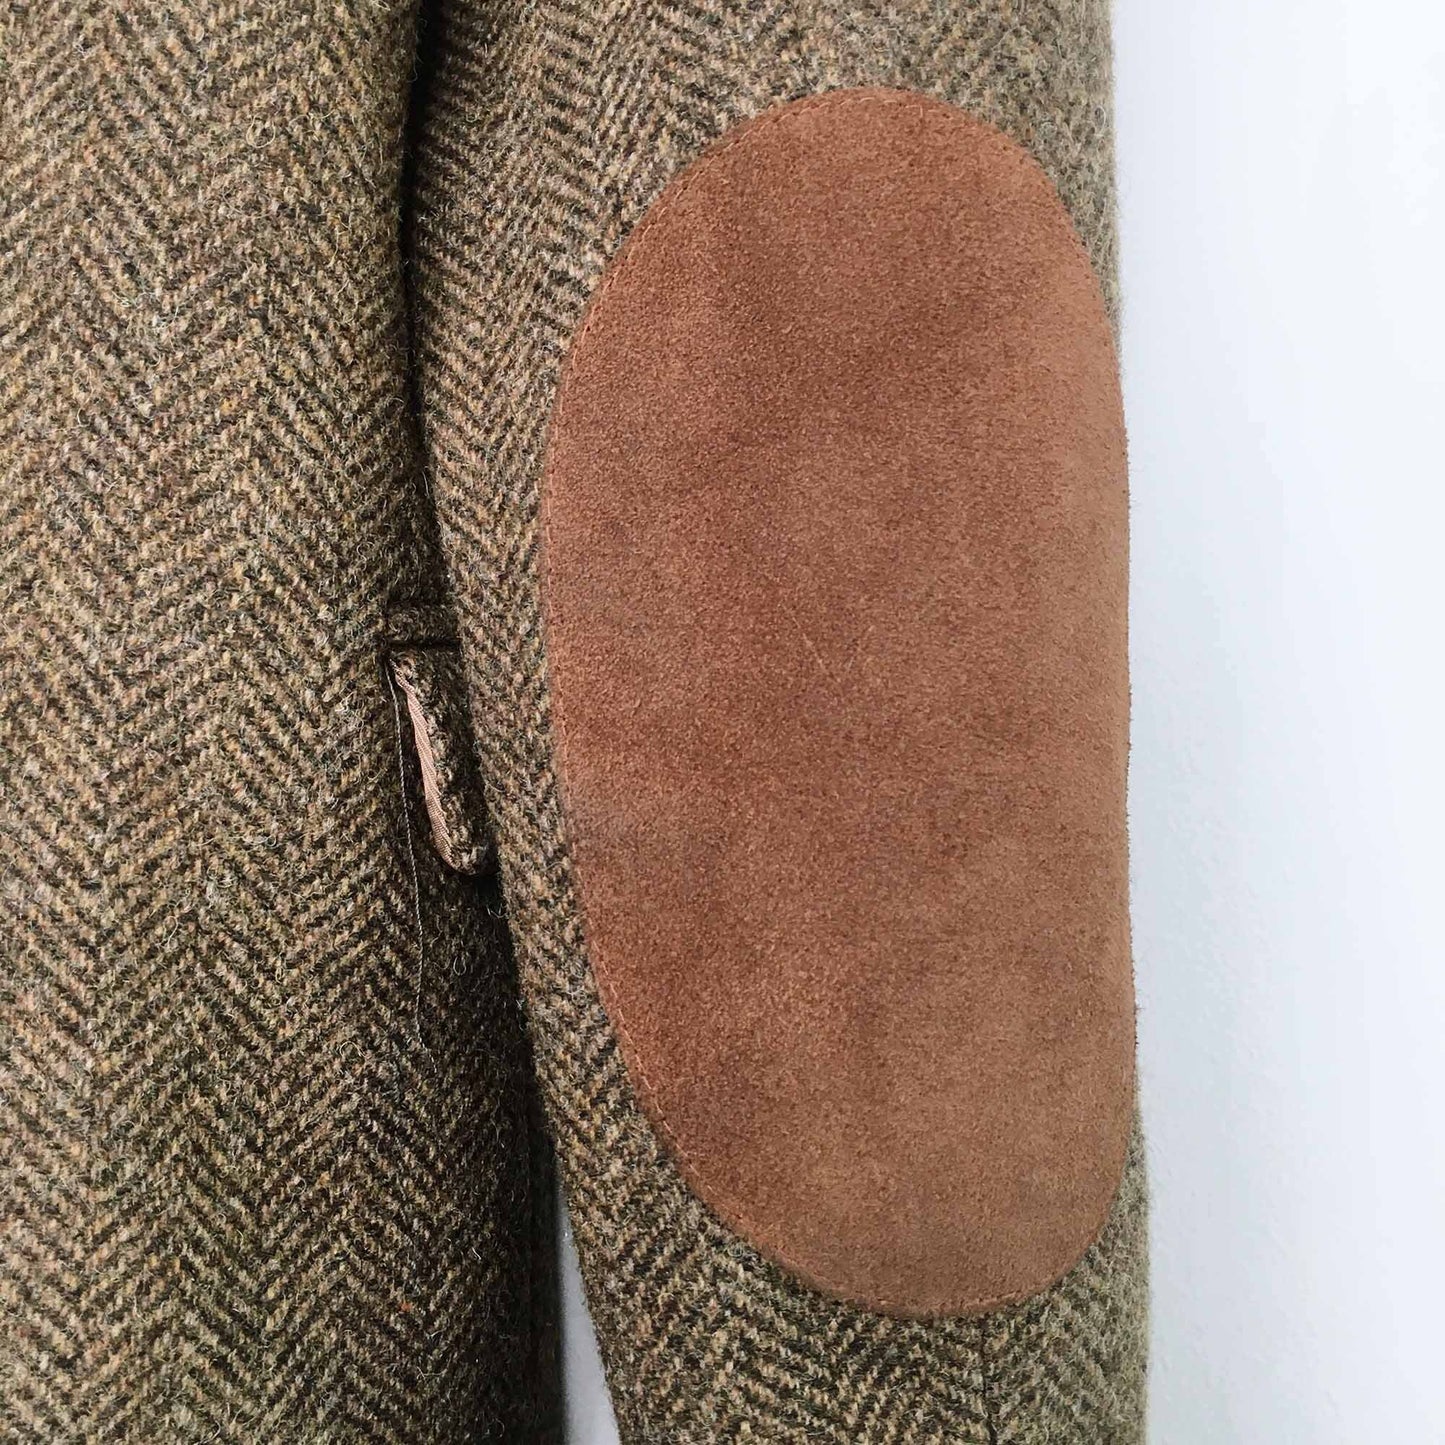 Zara wool herringbone blazer with elbow patch - size Small